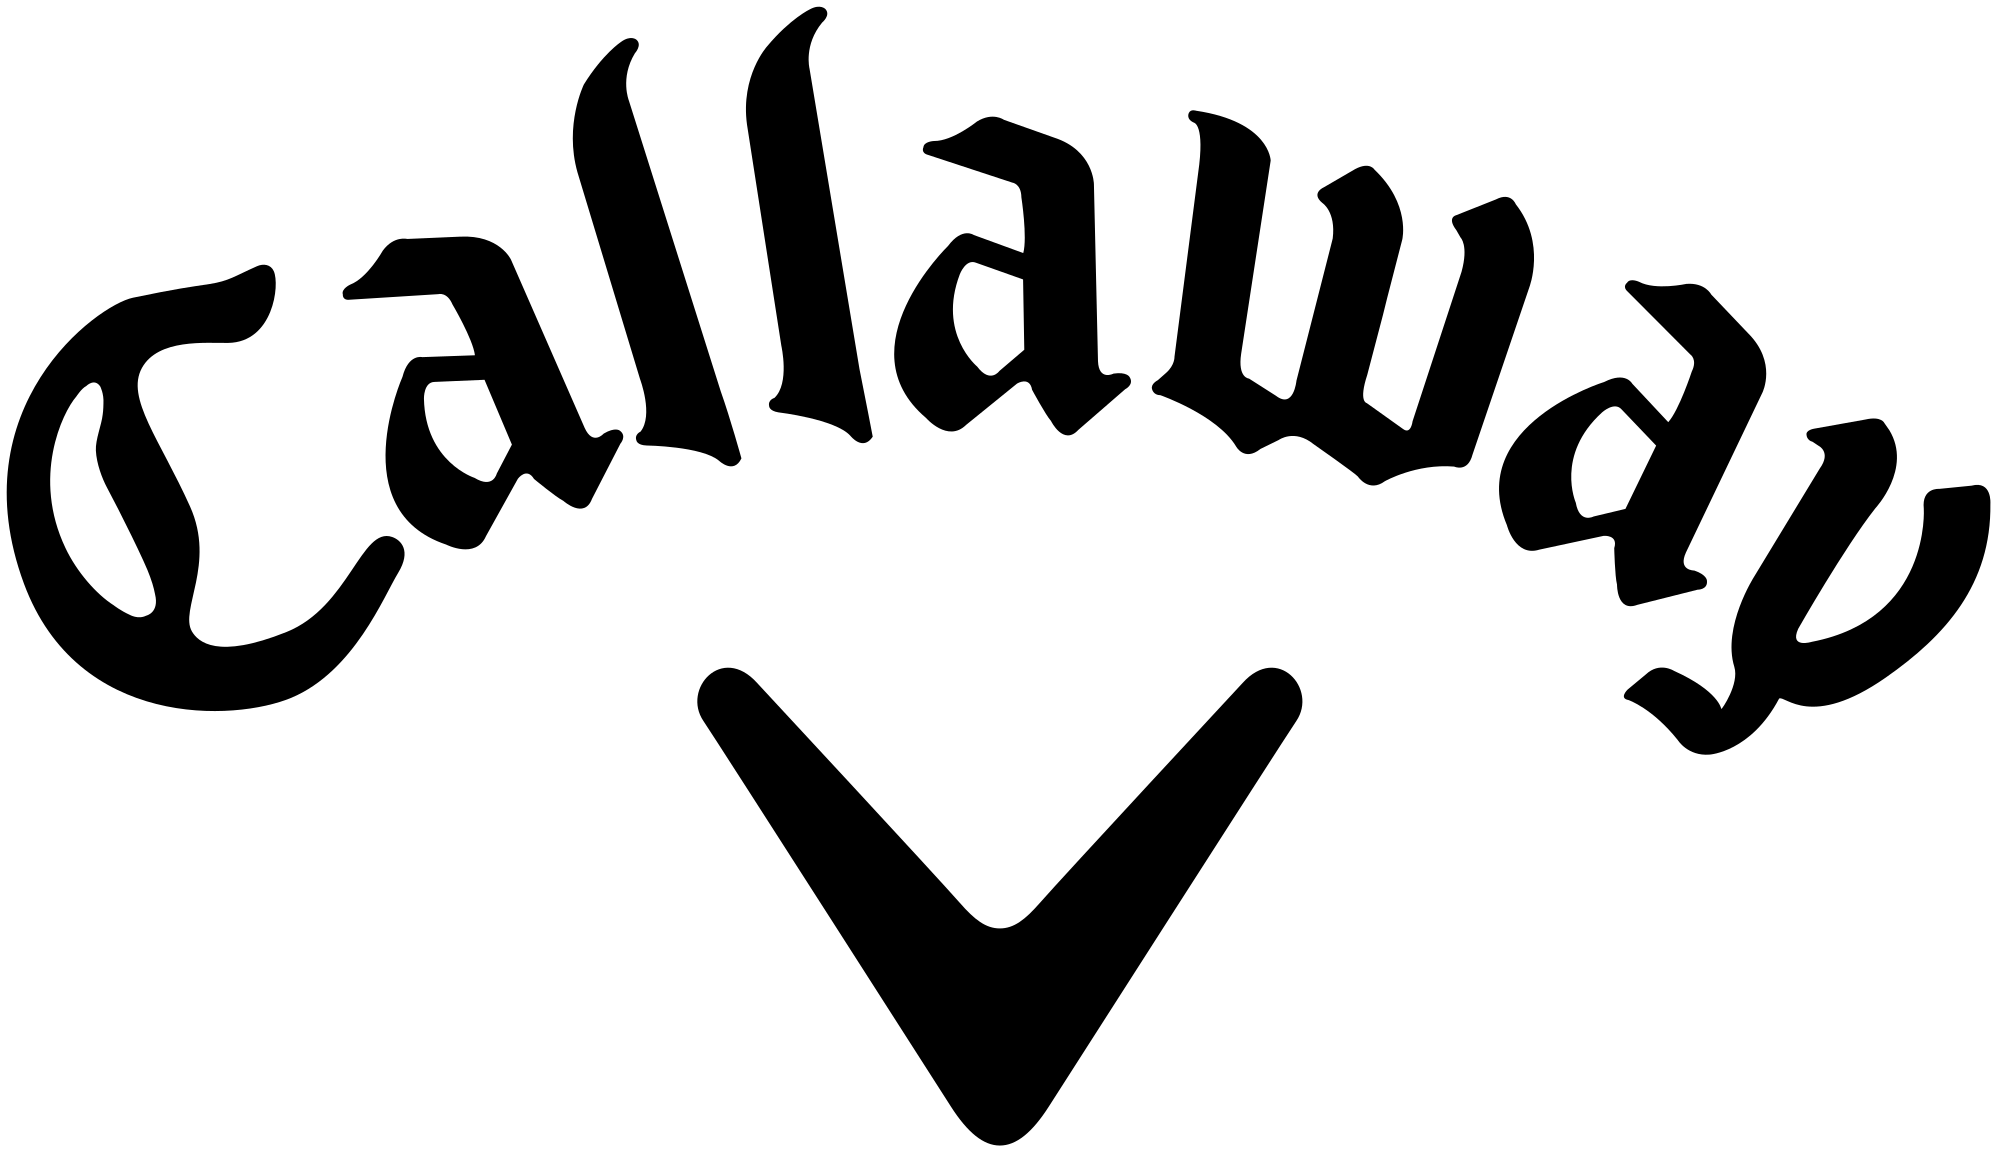 Callaway brand logo